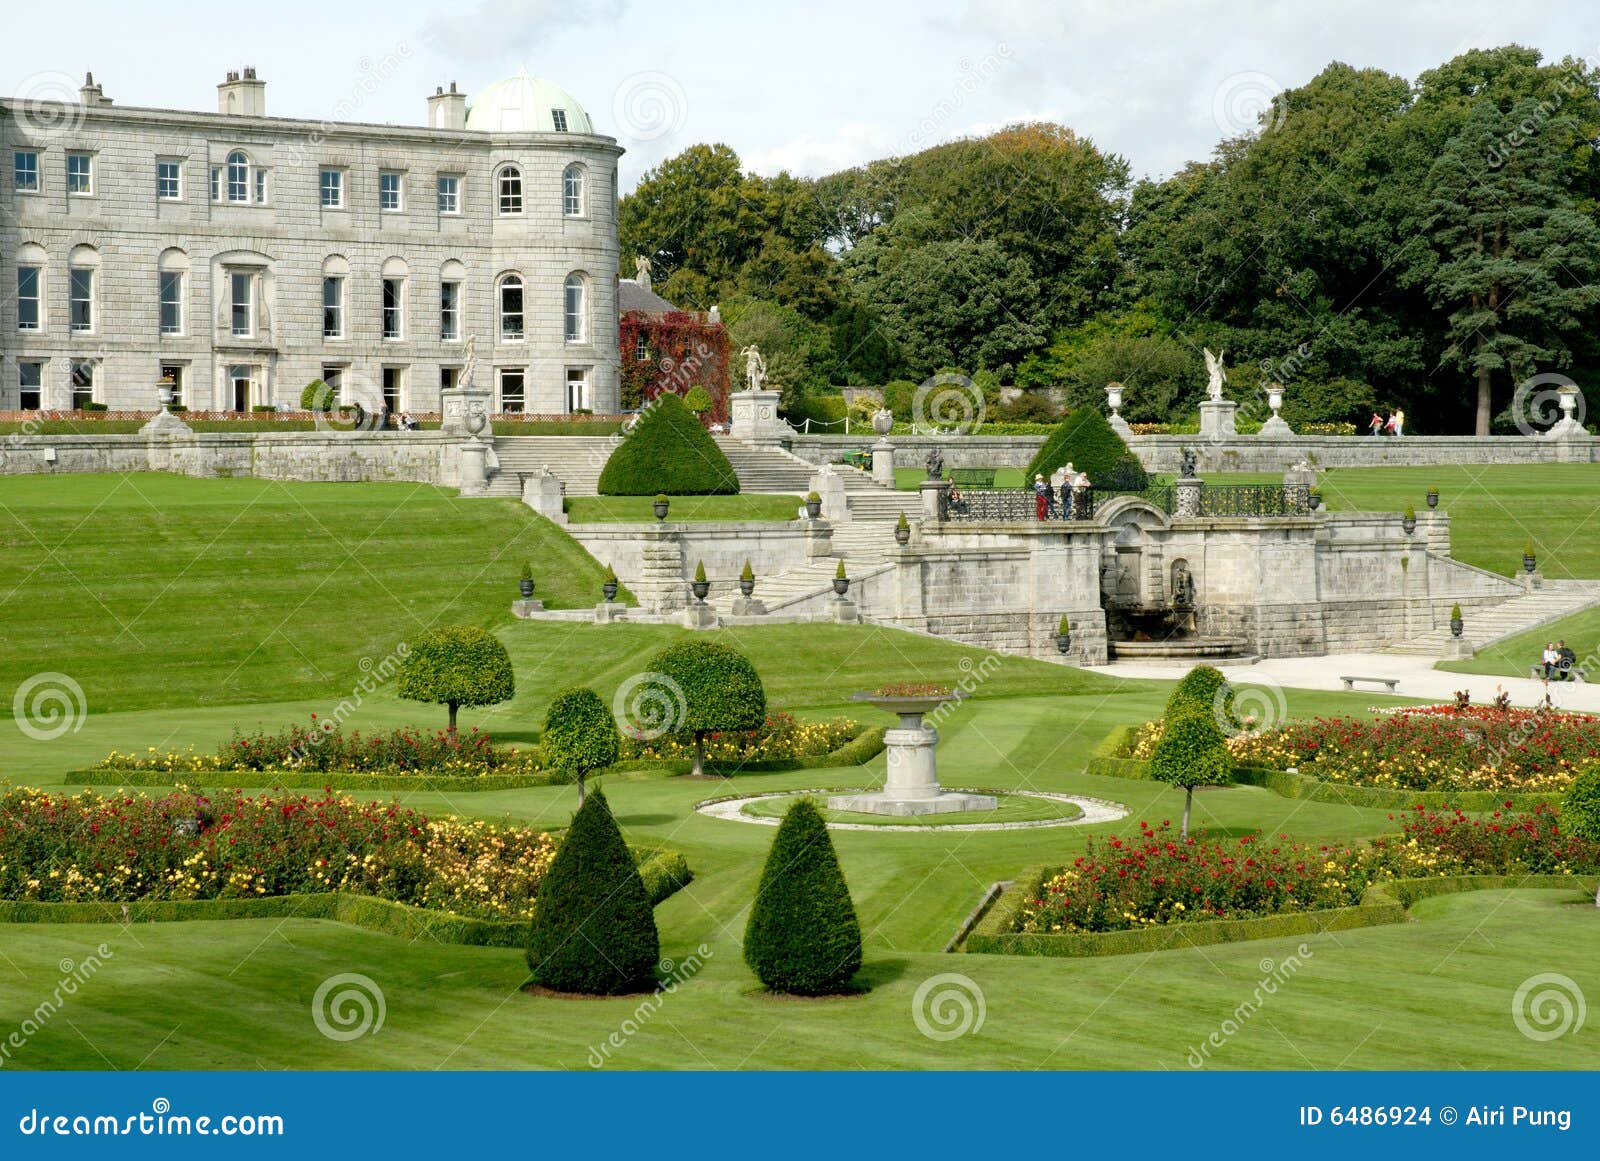 Ierland, de Tuinen in Powerscourt. Huis van Powerscourt werd oorspronkelijk gebouwd in 1731 op de plaats van een Normandisch kasteel, werd ontworpen door Richard Castle, ook arhitect van Russborough Hous.